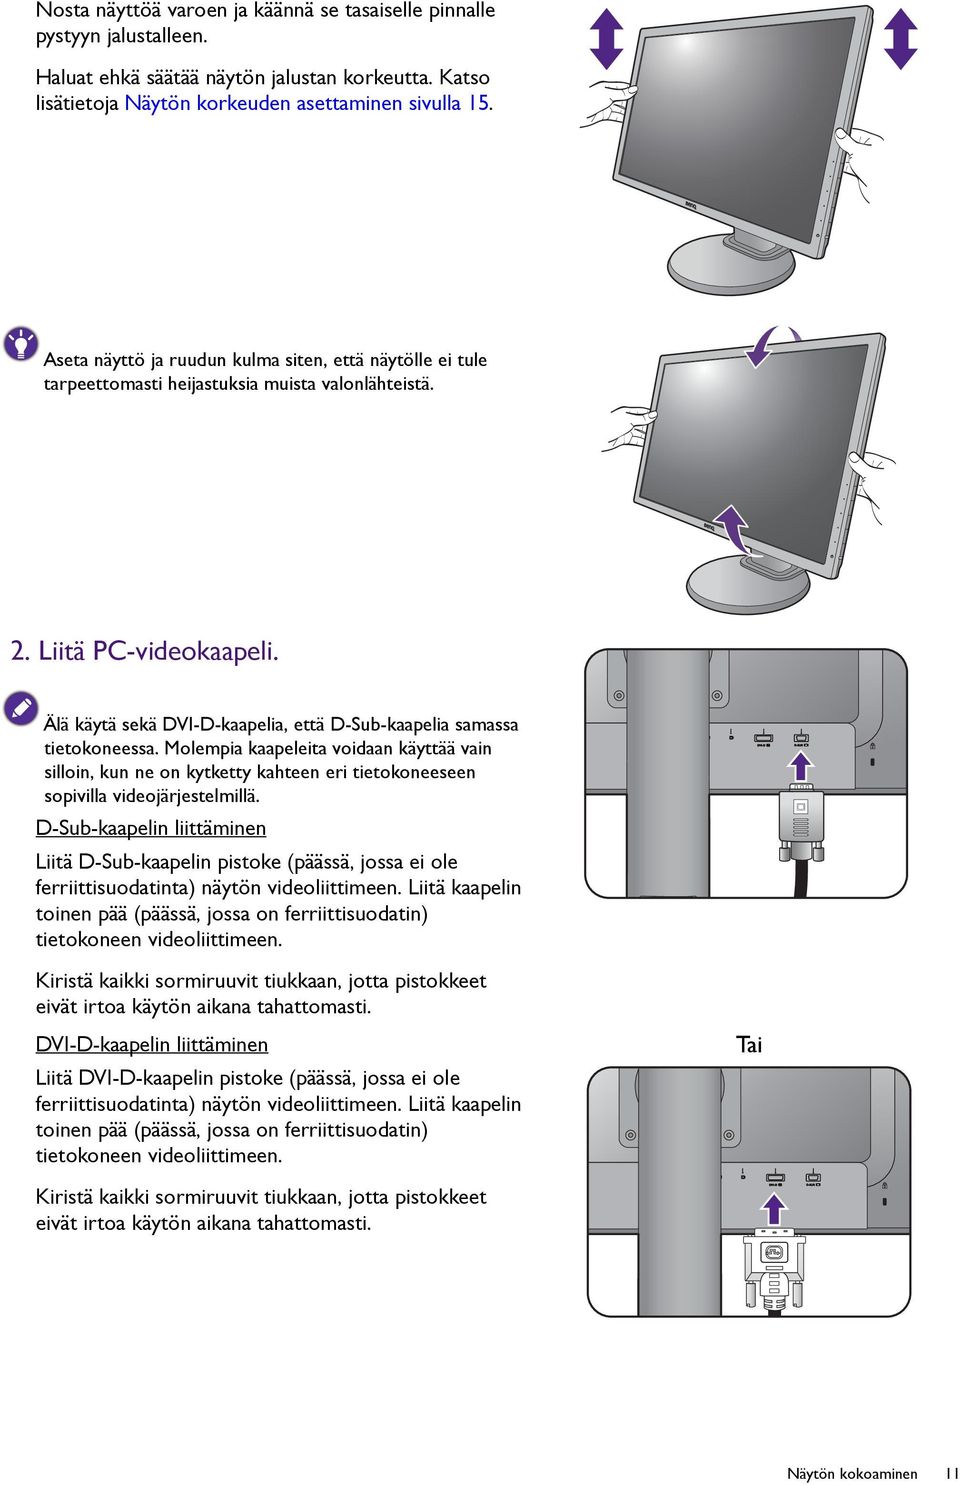 Älä käytä sekä DVI-D-kaapelia, että D-Sub-kaapelia samassa tietokoneessa. Molempia kaapeleita voidaan käyttää vain silloin, kun ne on kytketty kahteen eri tietokoneeseen sopivilla videojärjestelmillä.